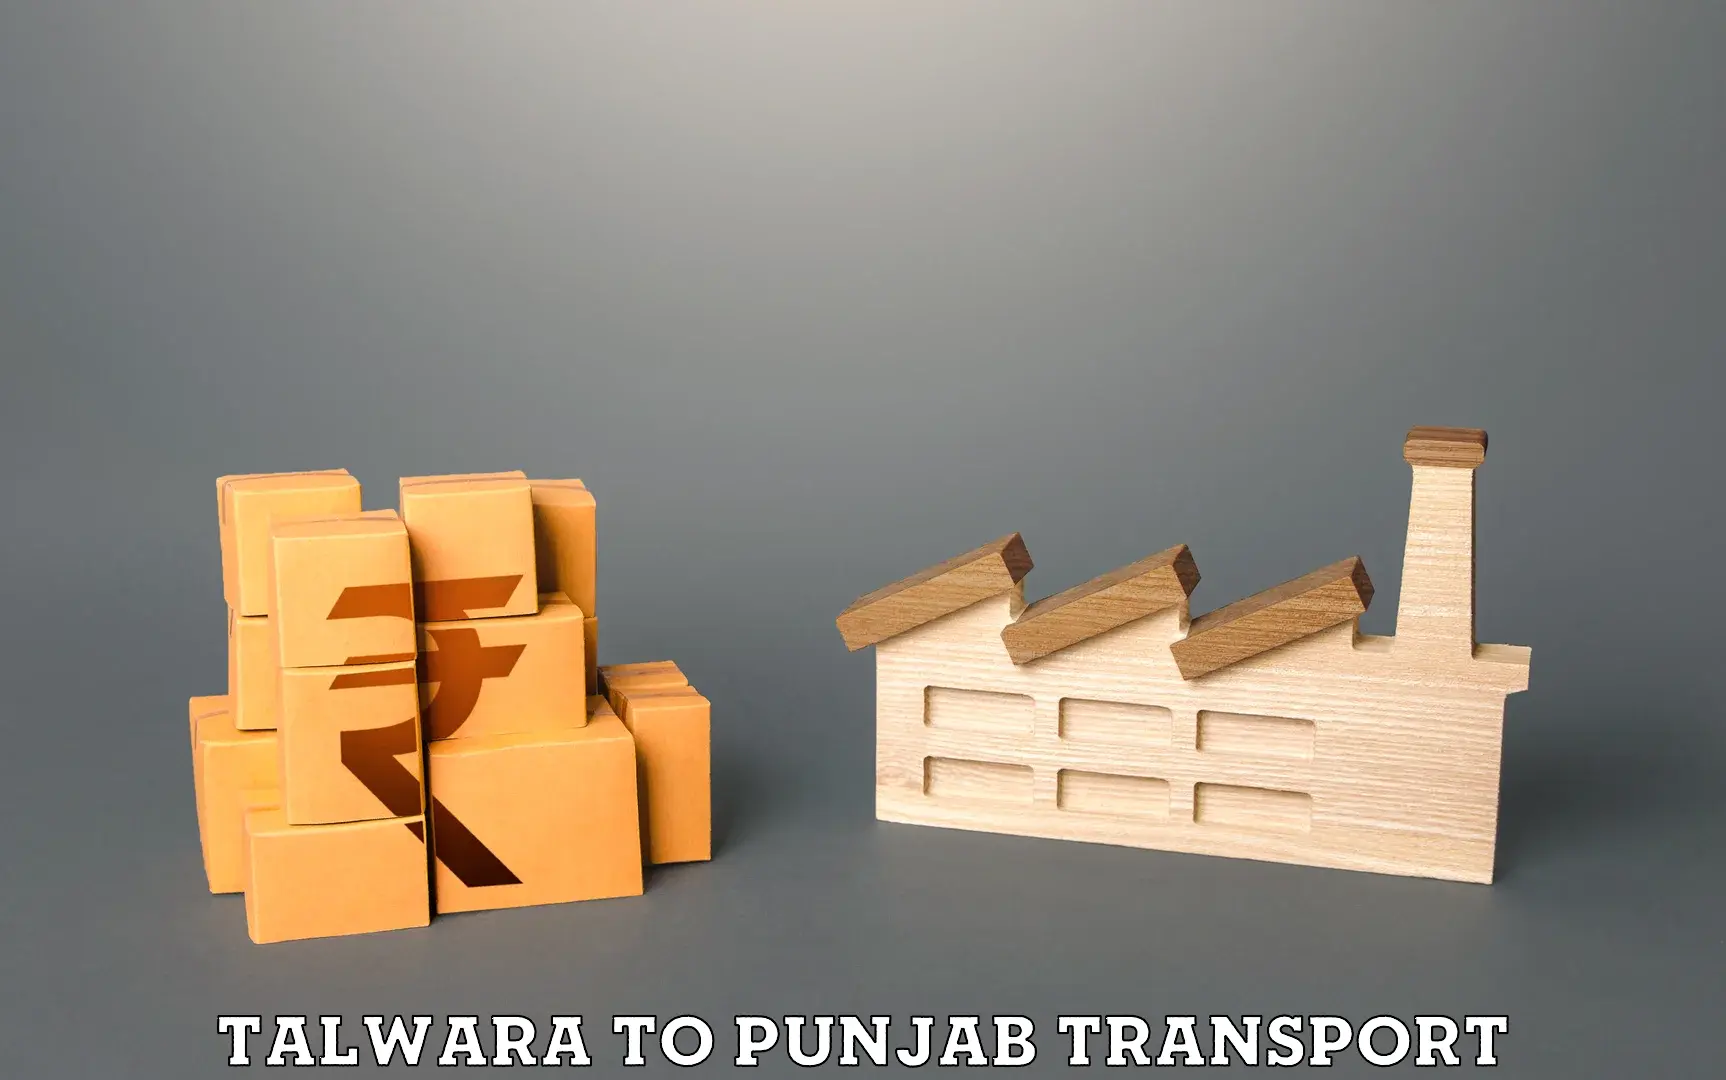 Transport in sharing Talwara to Punjab